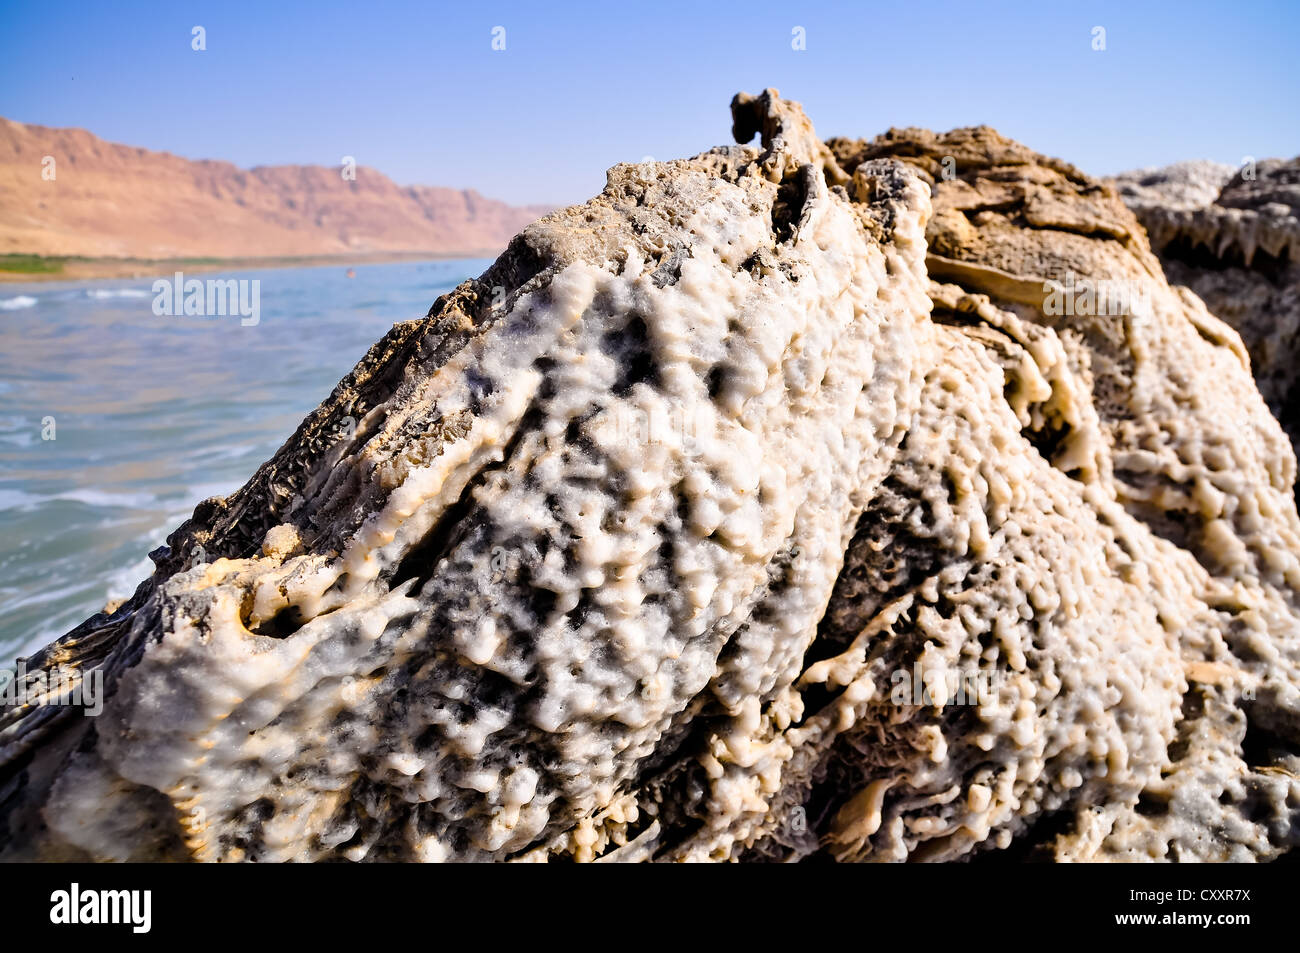 Crystalic salt on the beach of the Dead Sea, Stock Photo